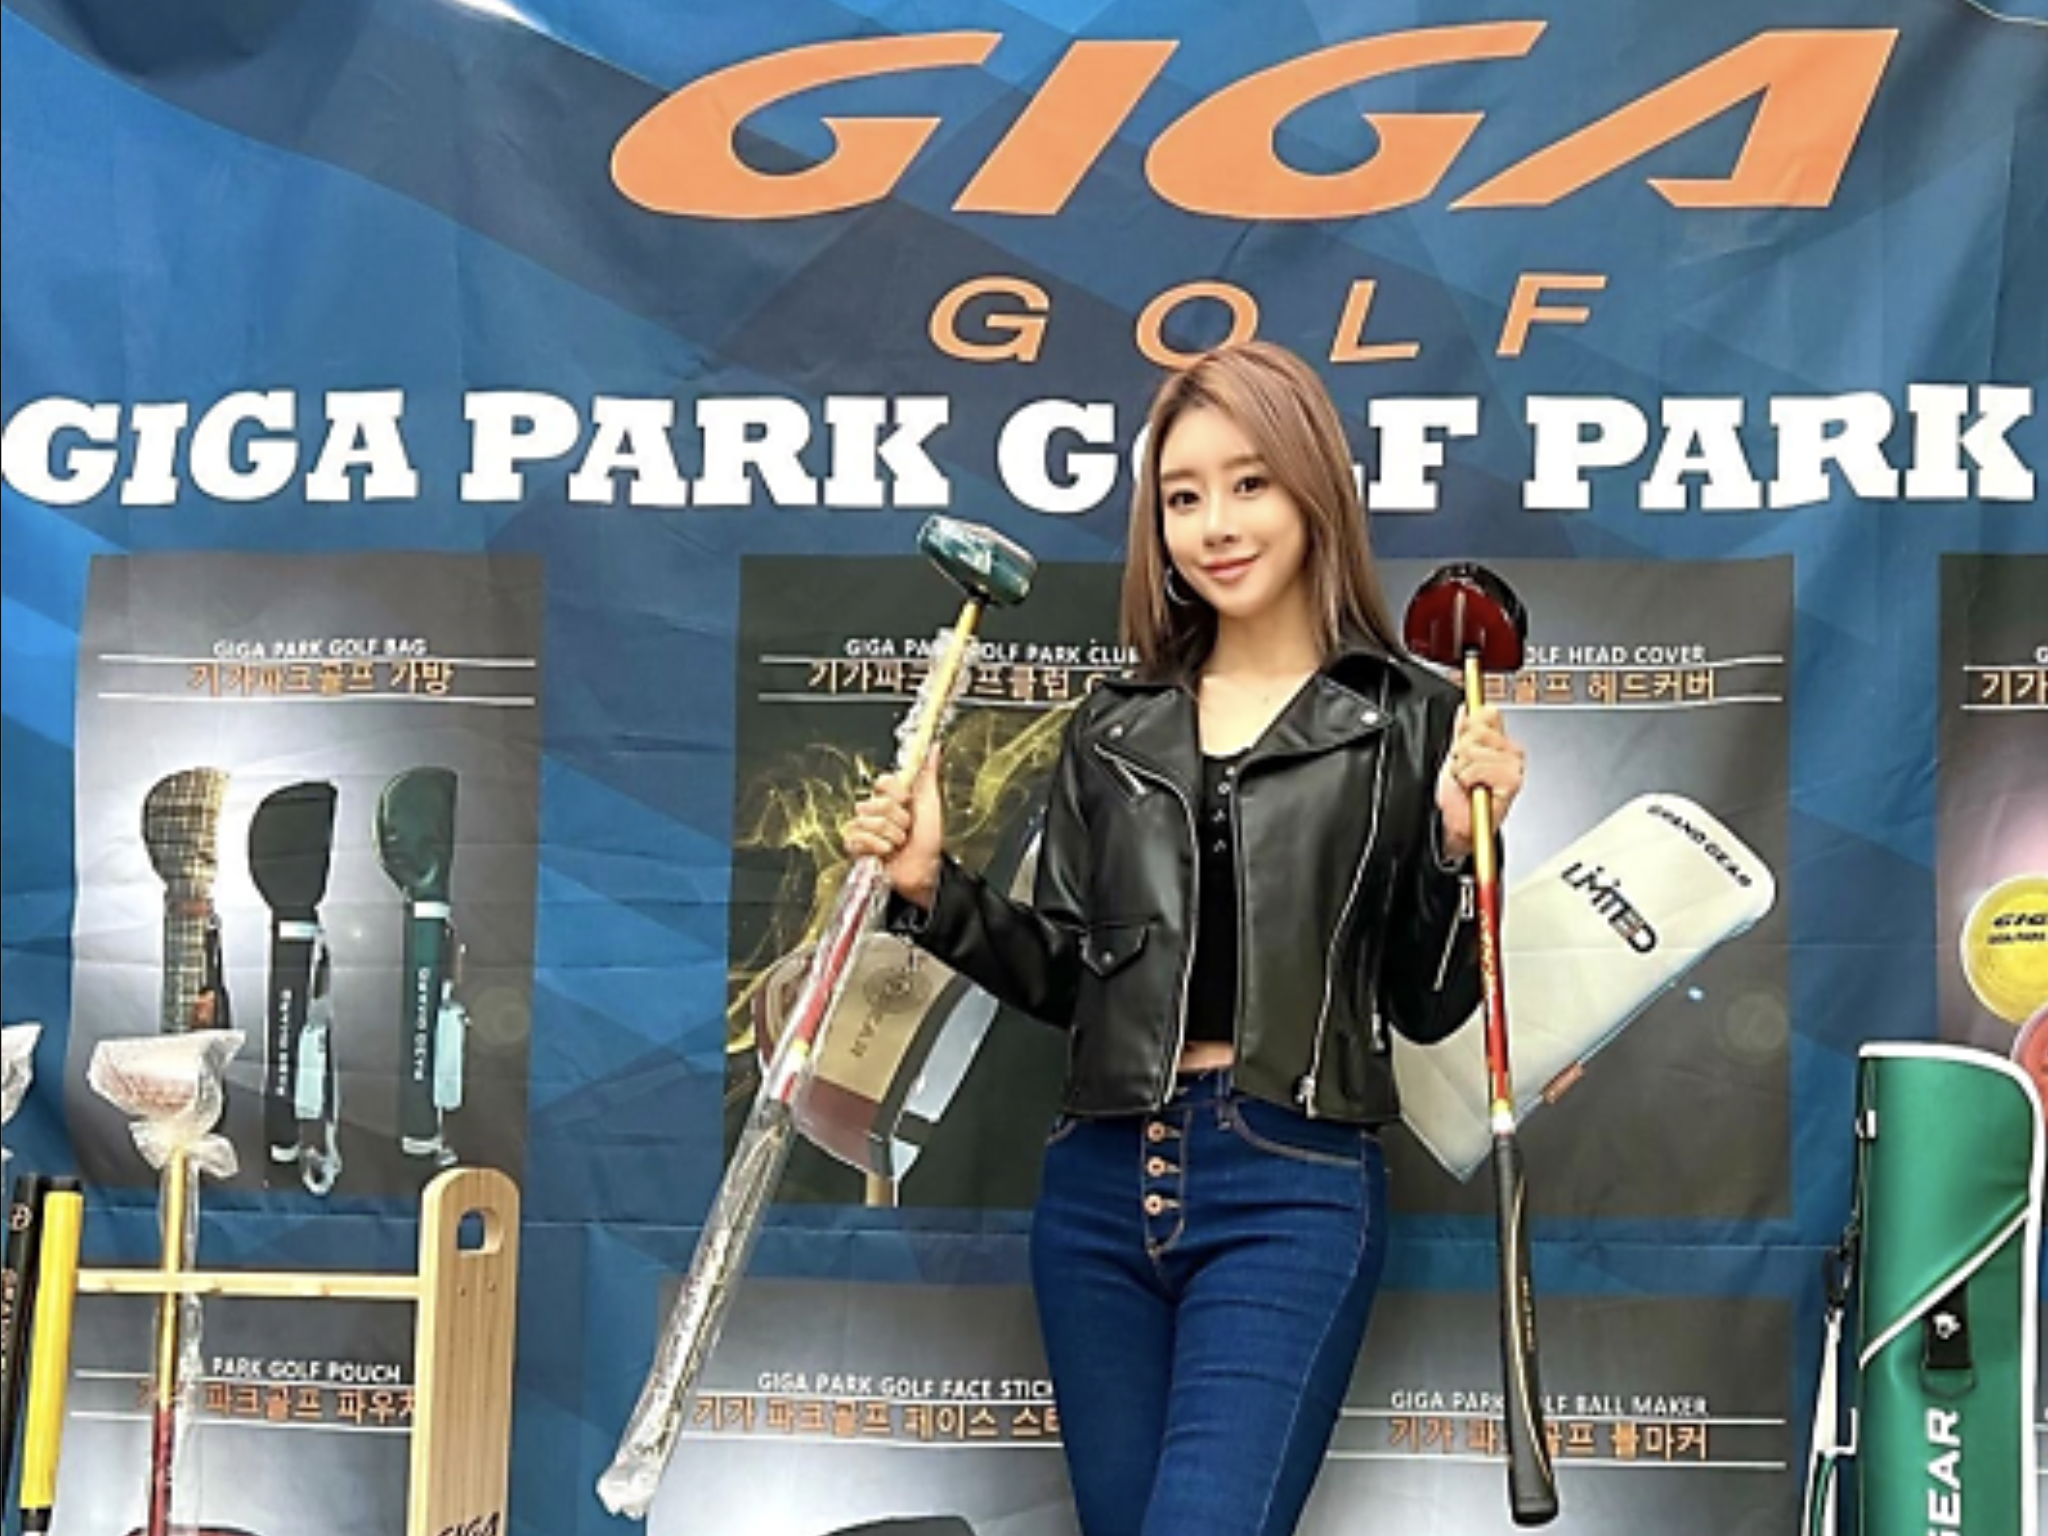 Giga golf - Next Golf